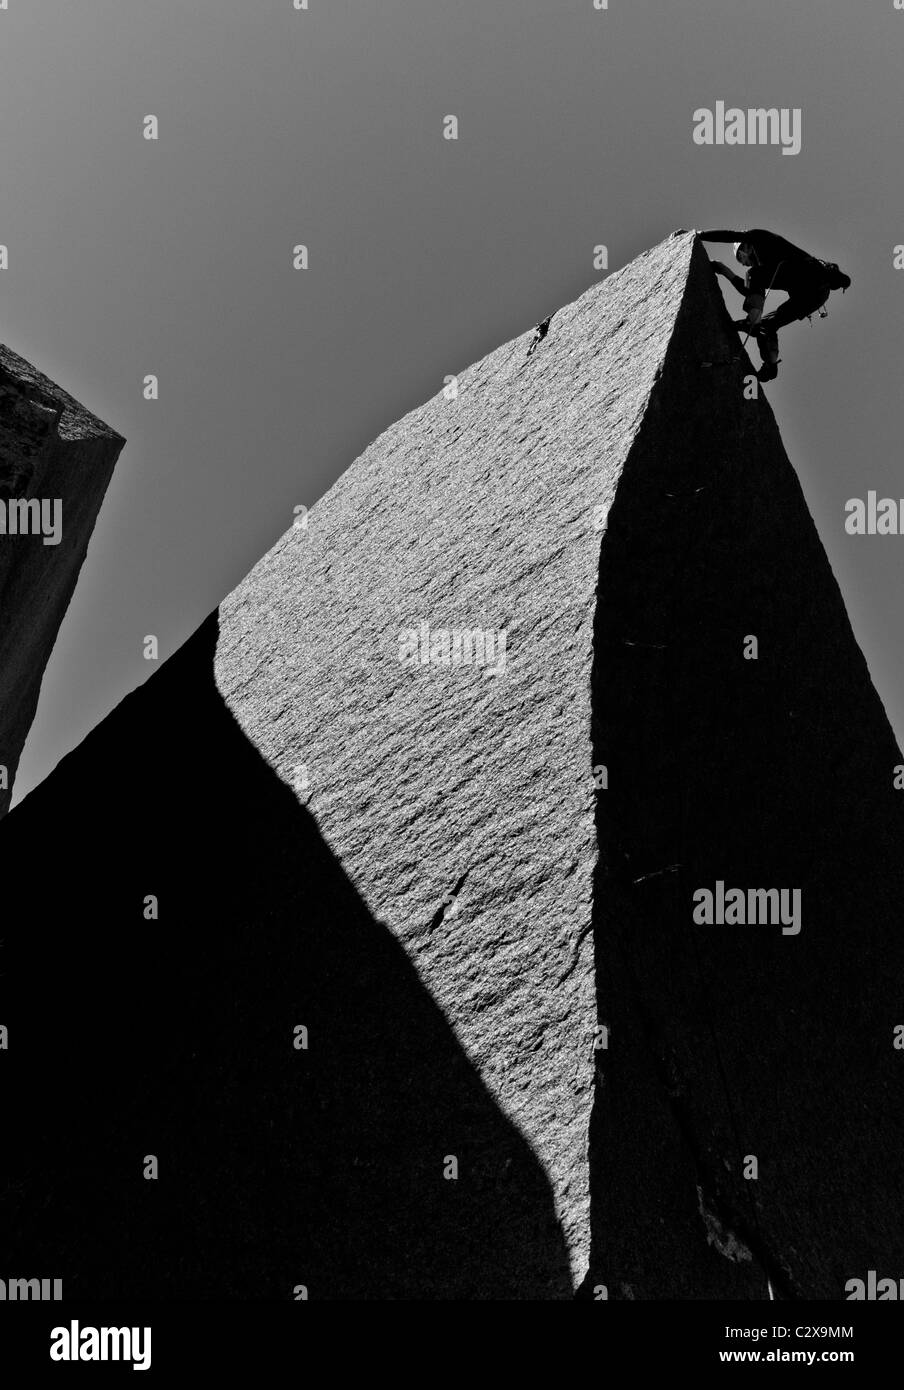 Männliche Felsen Kletterer kämpft für seinen nächsten Griff auf einem anspruchsvollen Aufstieg. Stockfoto